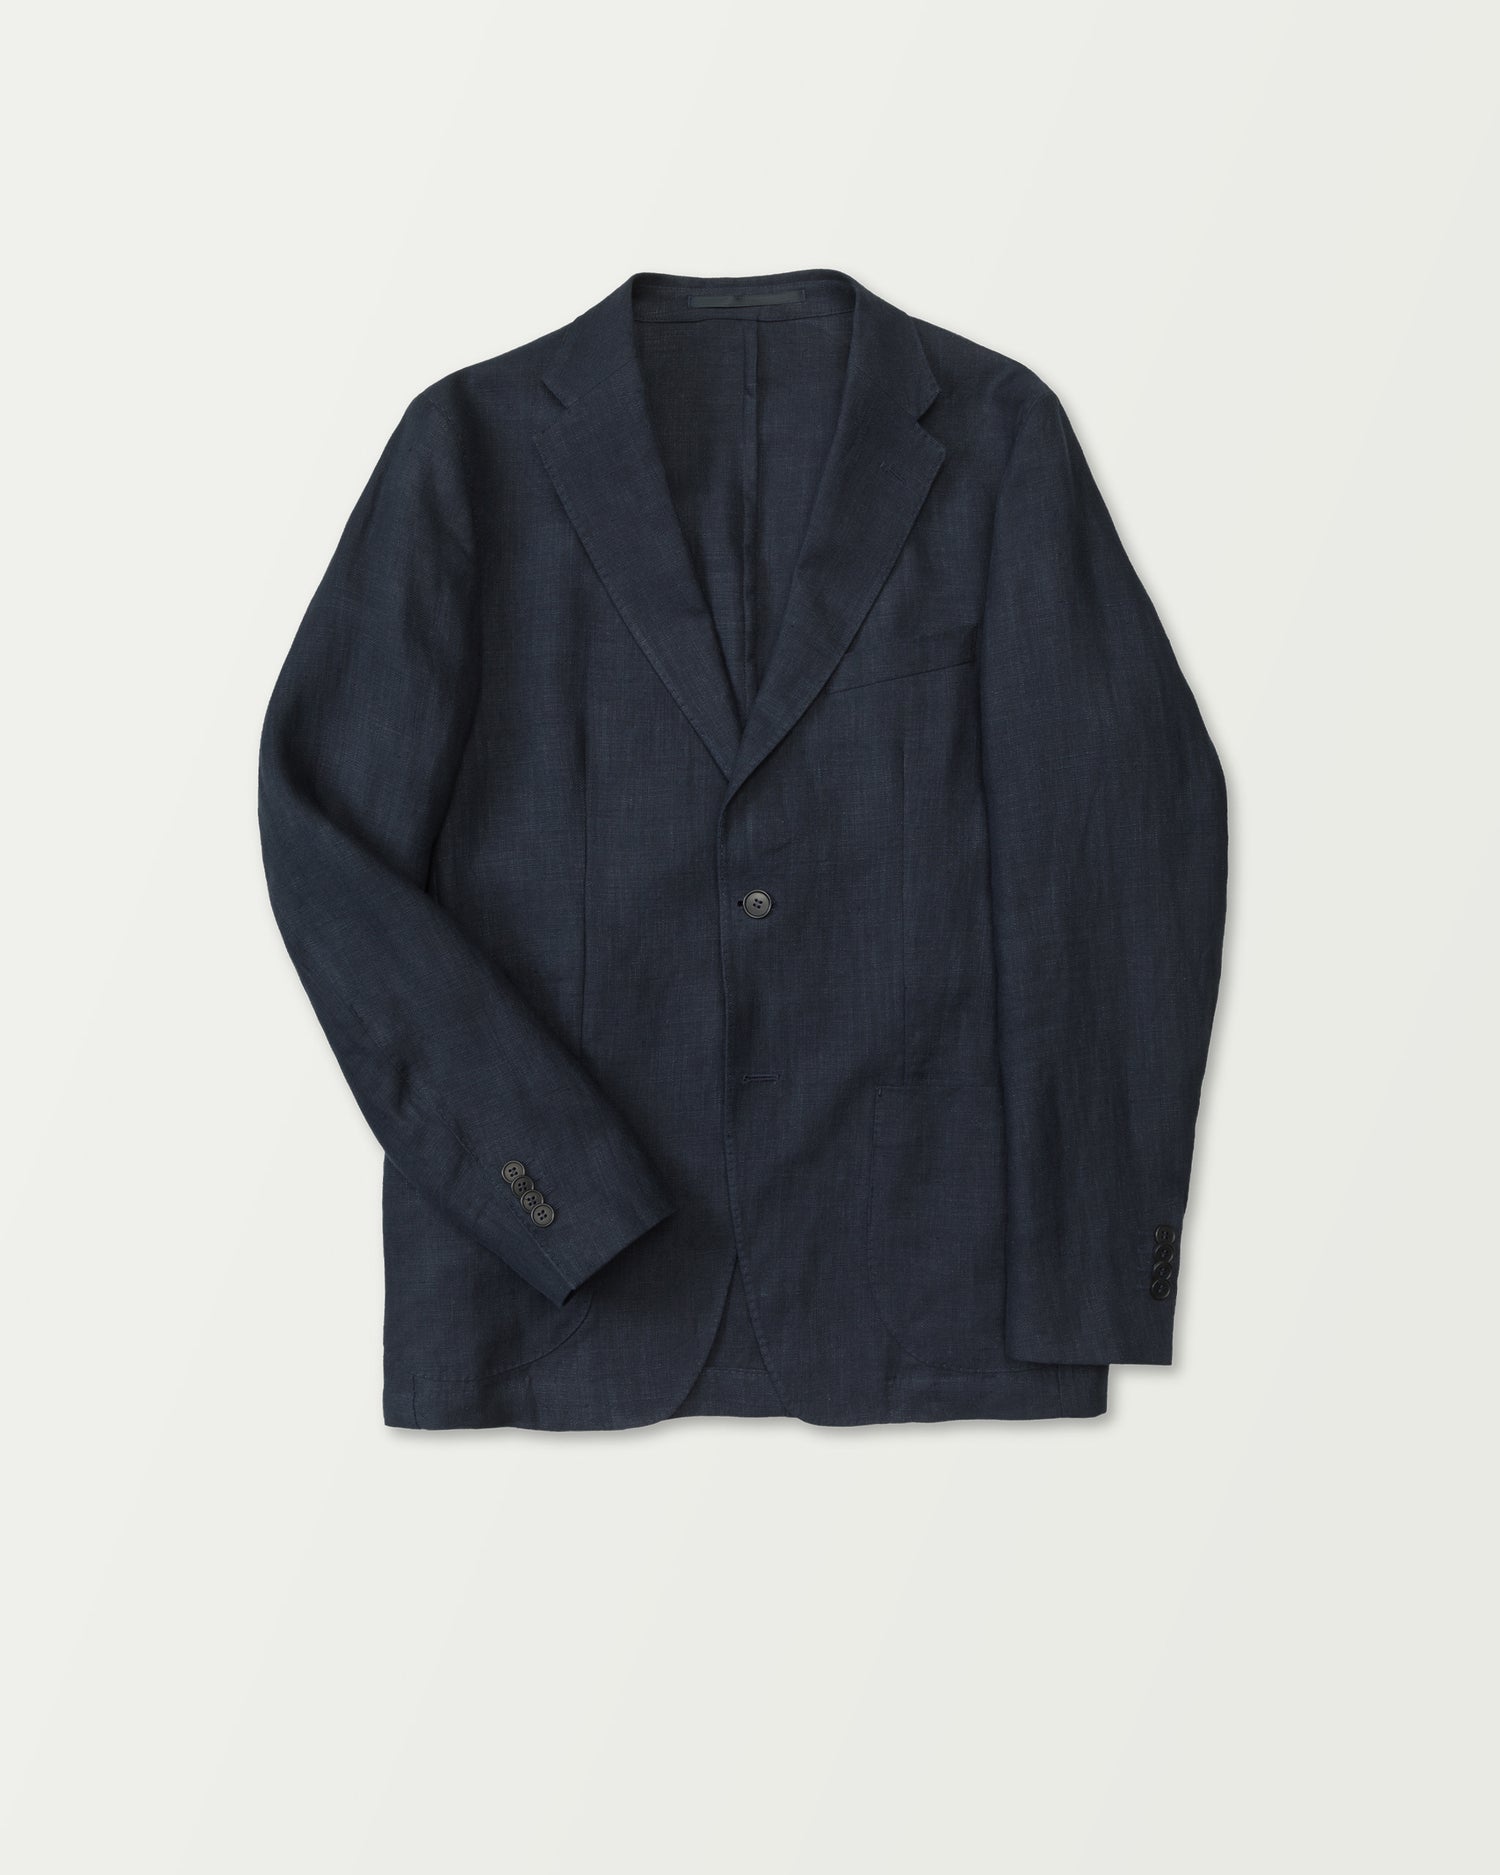 Linen Suit in Dark Blue (8635782824266)